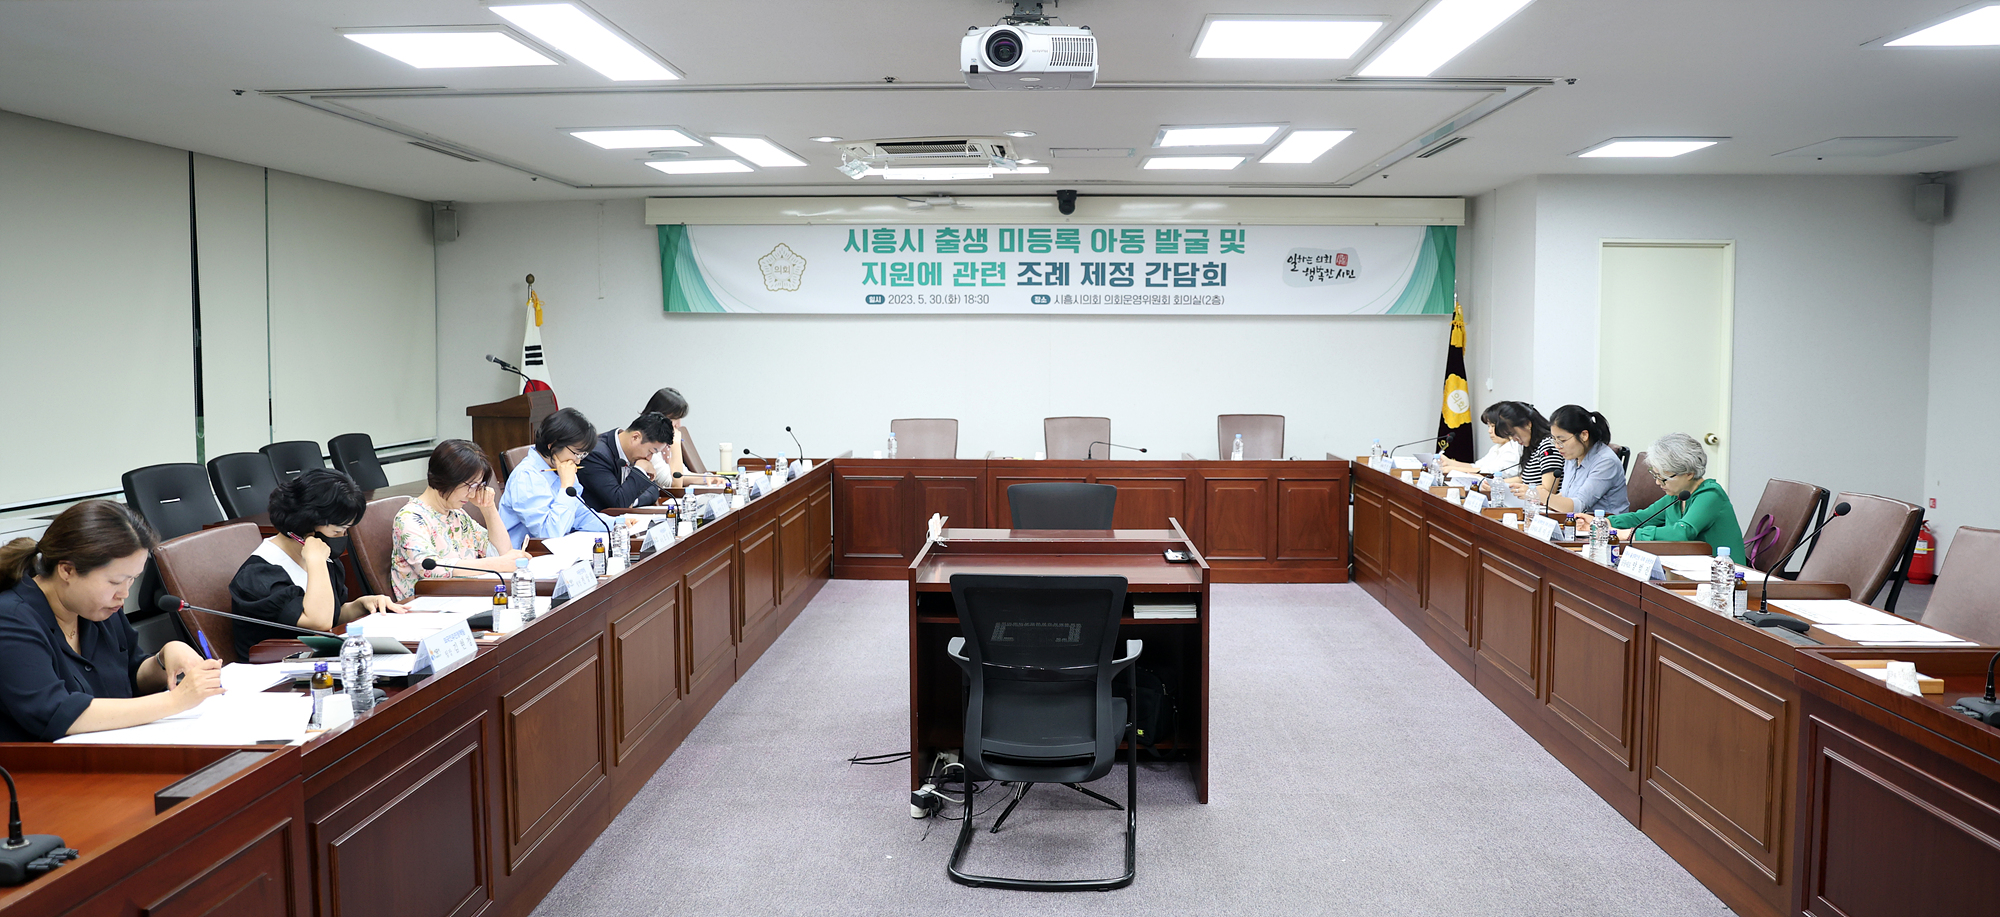 시흥시의회, 출생 미등록 아동 발굴 및 지원에 관한 조례 제정을 위한 간담회 개최